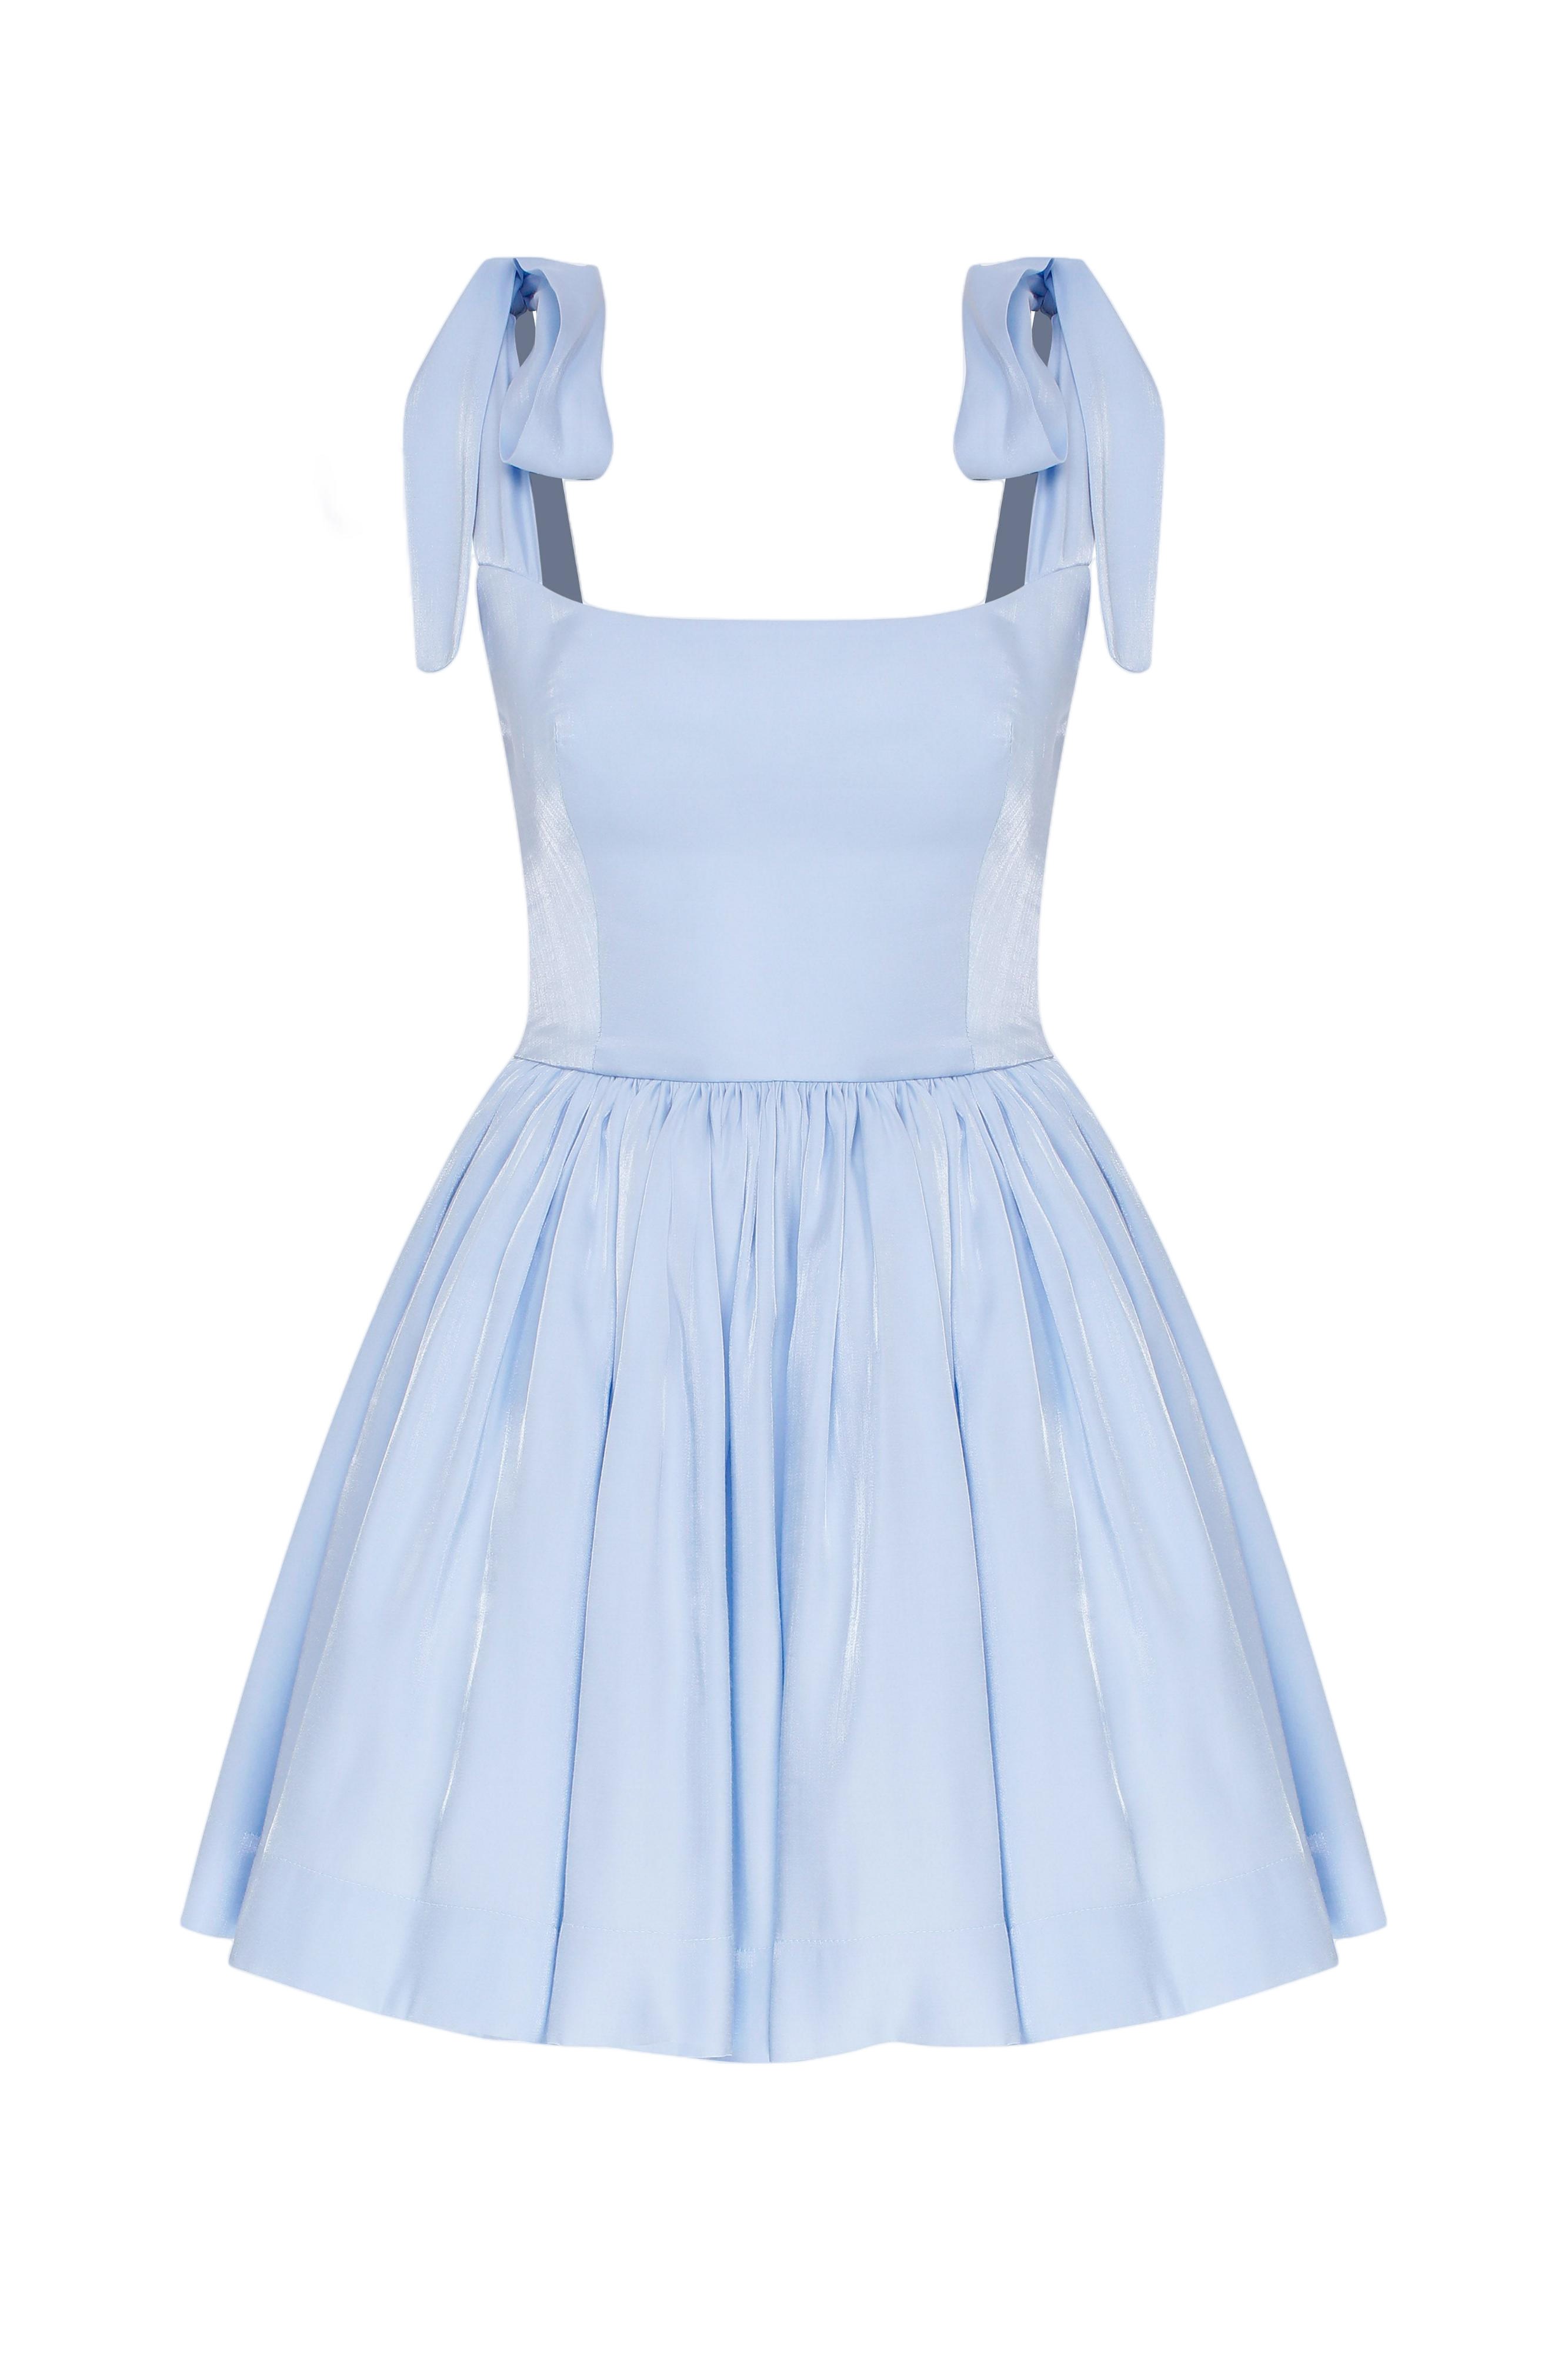 Nazli Ceren Sibby Baby Blue Dress In White